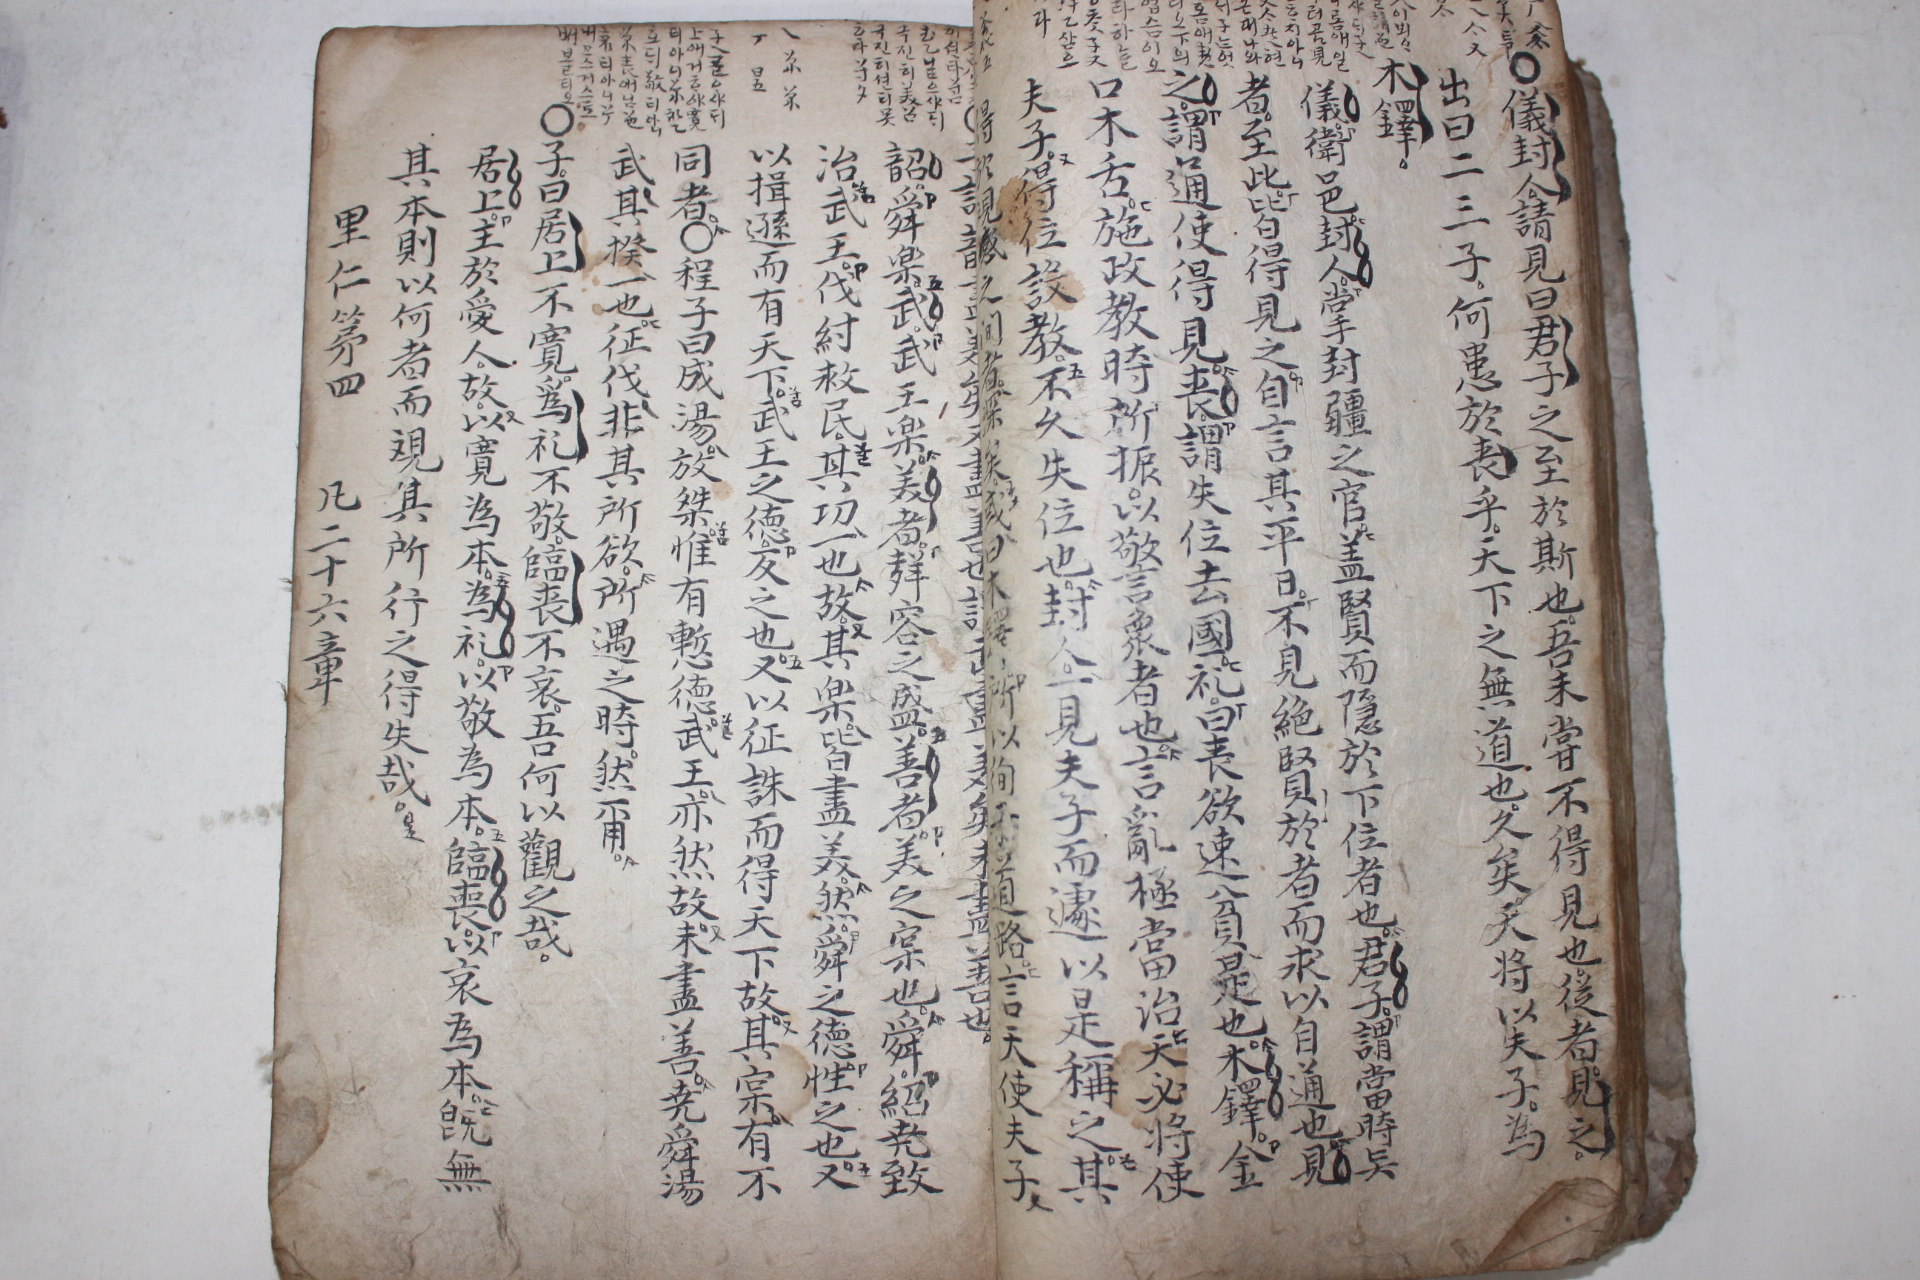 1702년(康熙41年) 필사기가 있는 필사본 논어대전 20권 2책완질